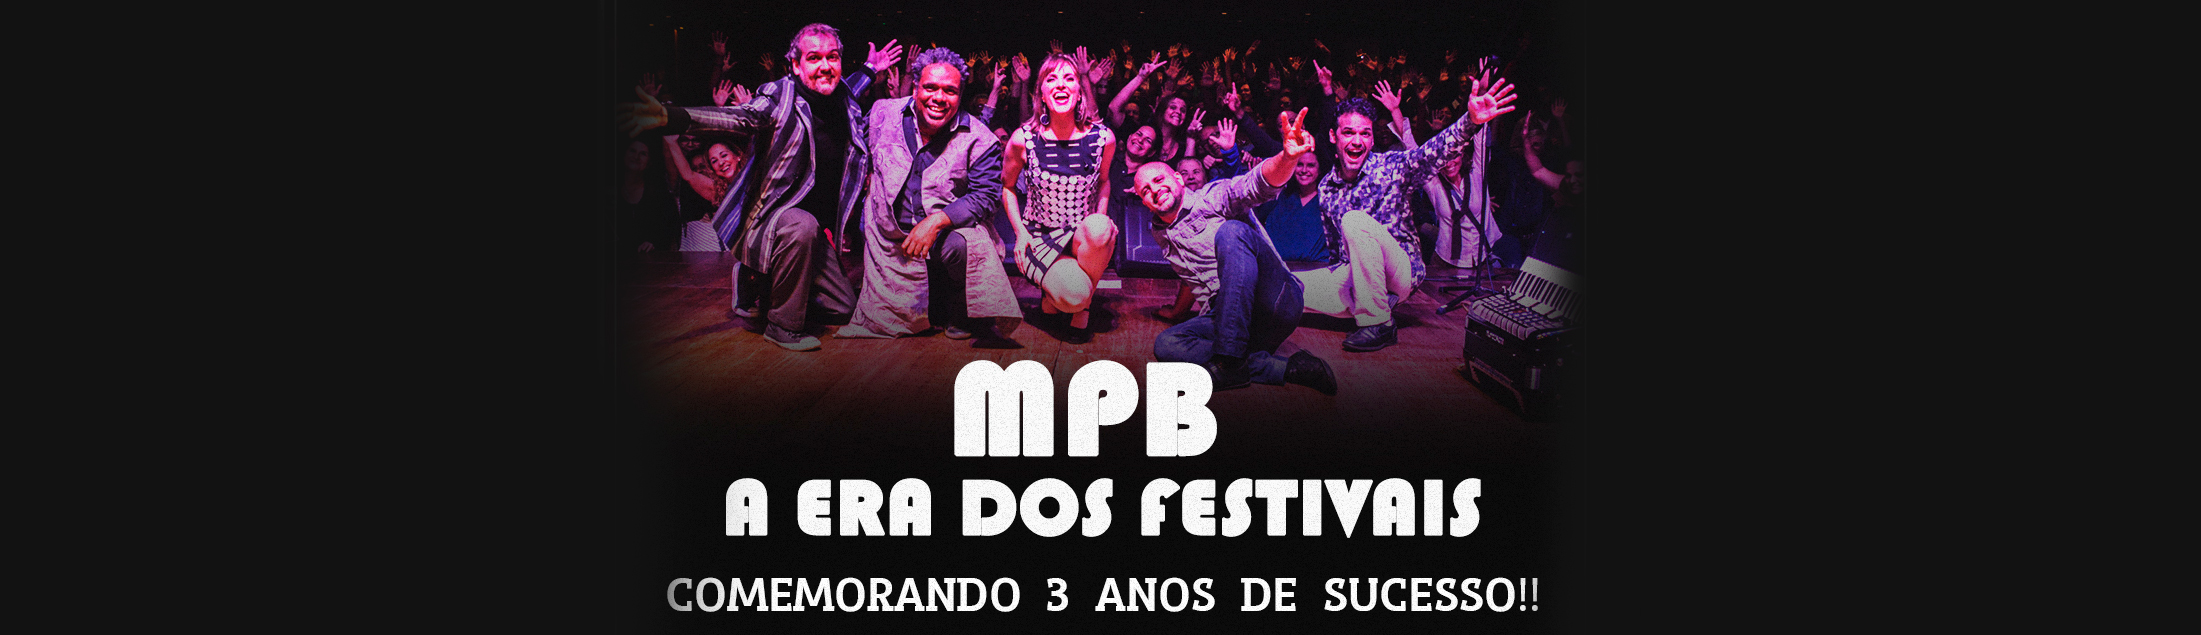 MPB - A Era dos Festivais: de volta ao Teatro Rival